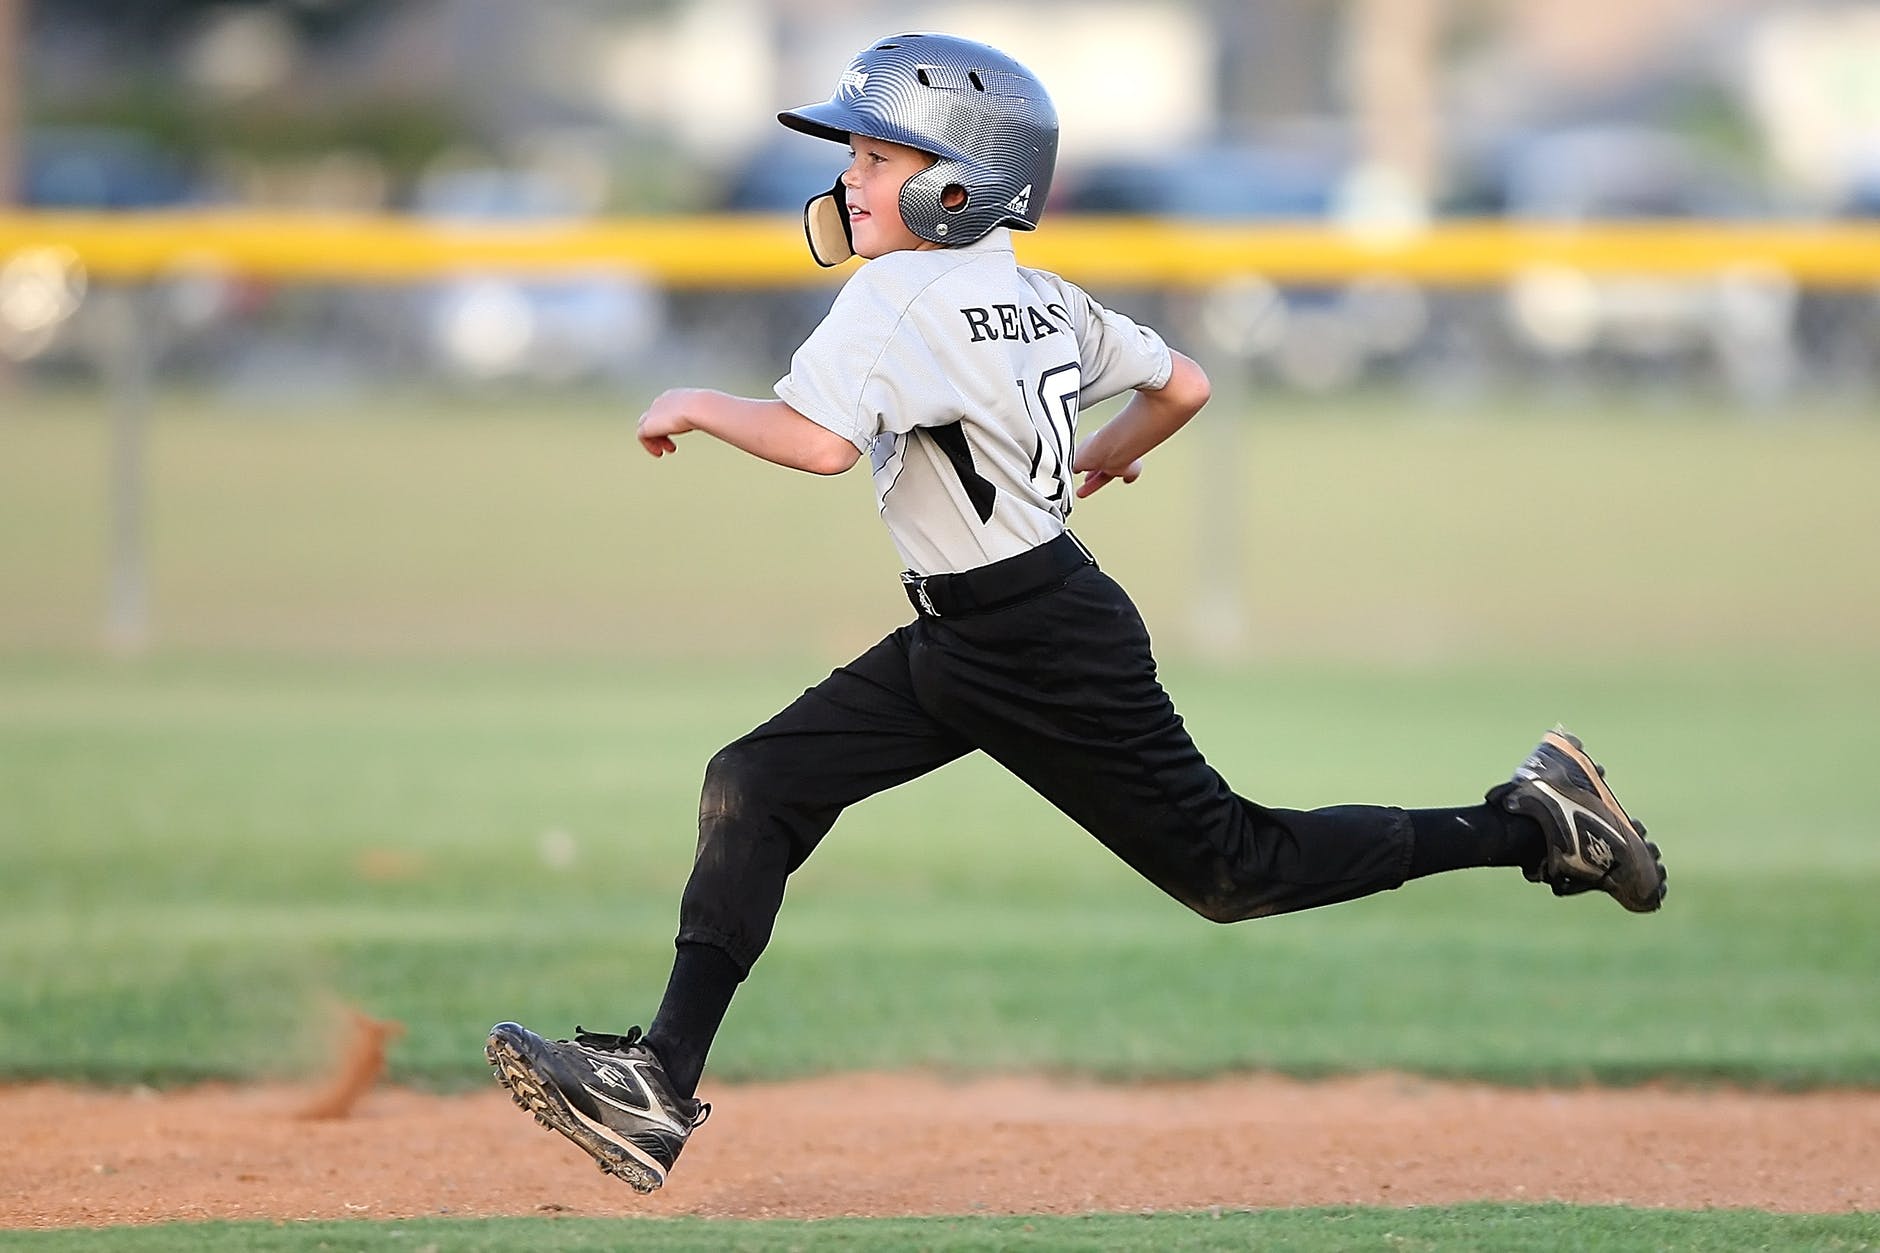 Niño jugando béisbol. | Foto: Pexels